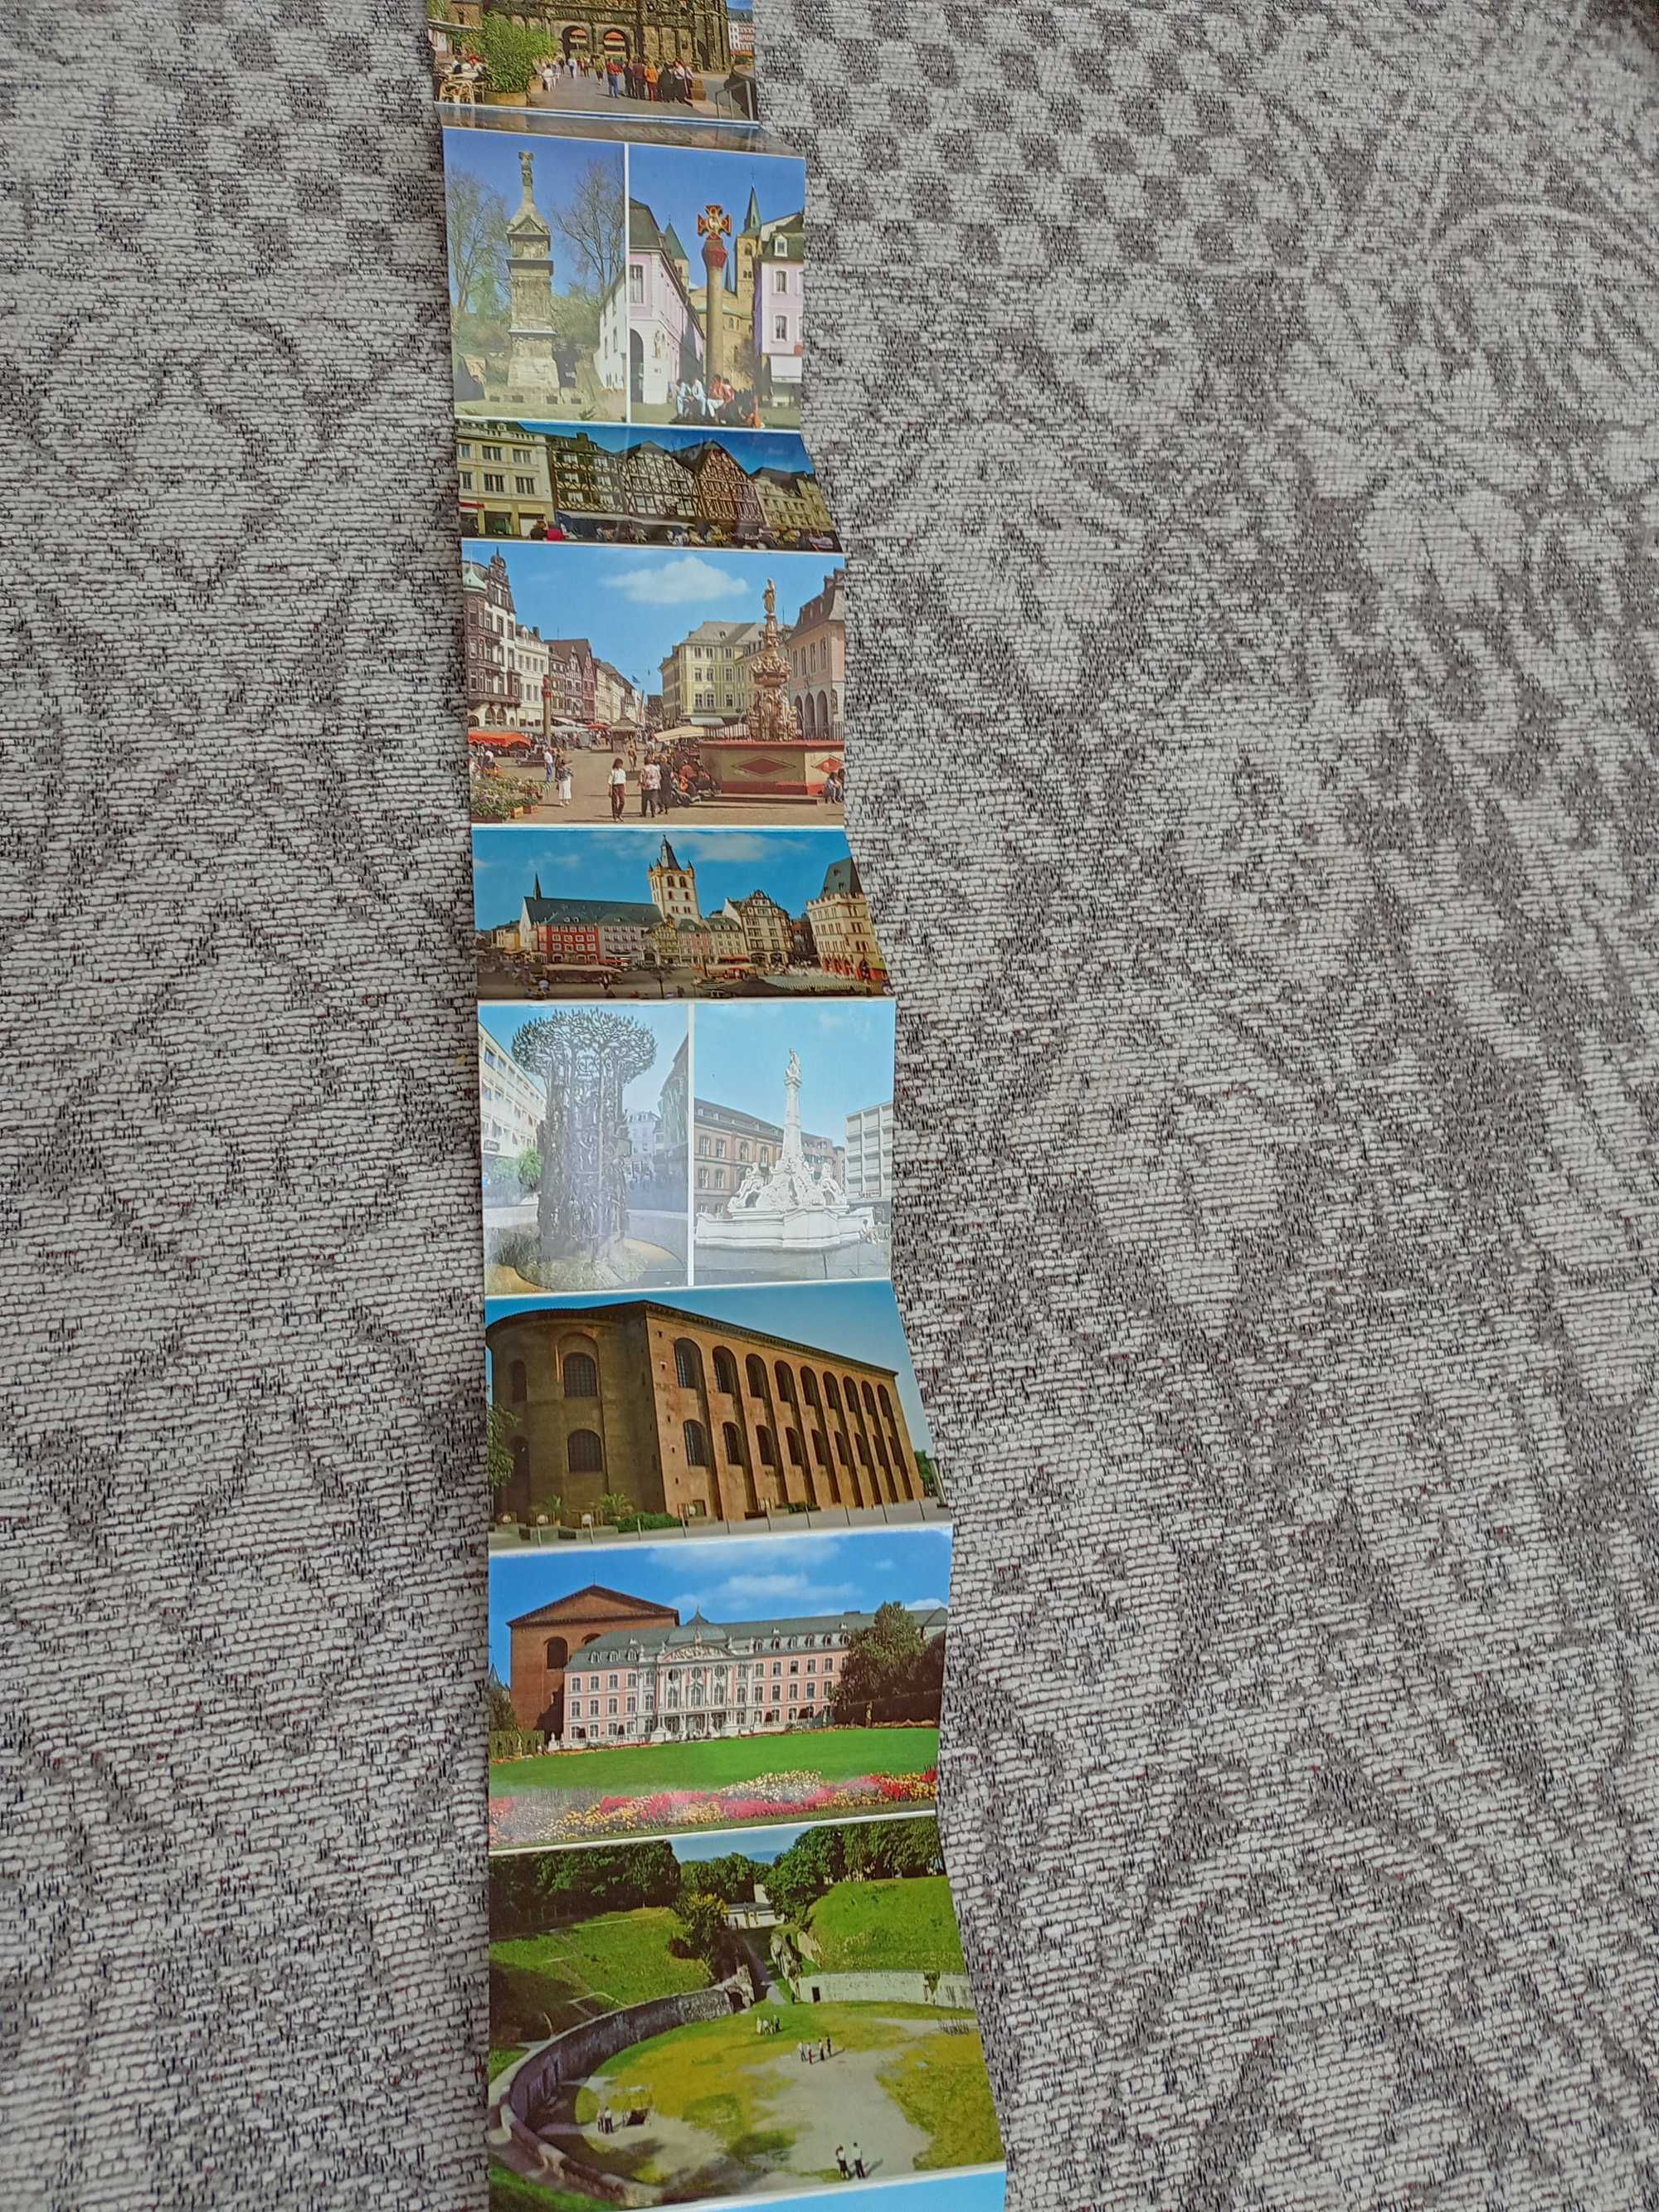 карточки/открытки немецкой архитектуры с переводом на разные языки